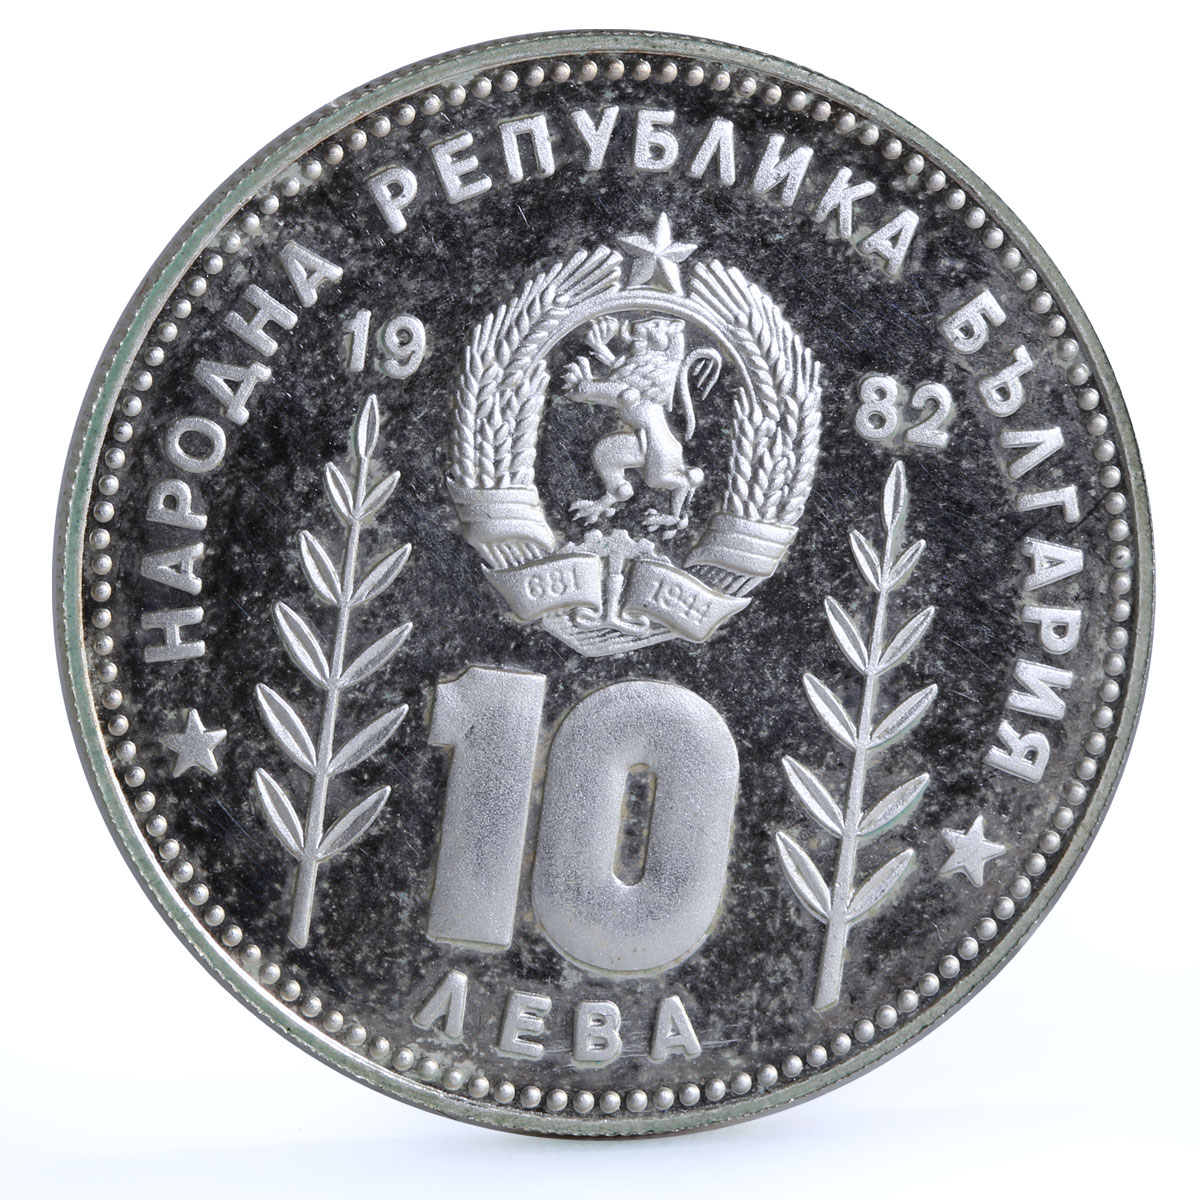 Bulgaria 10 leva Football World Cup in Spain Sombrero and Ball silver coin 1982